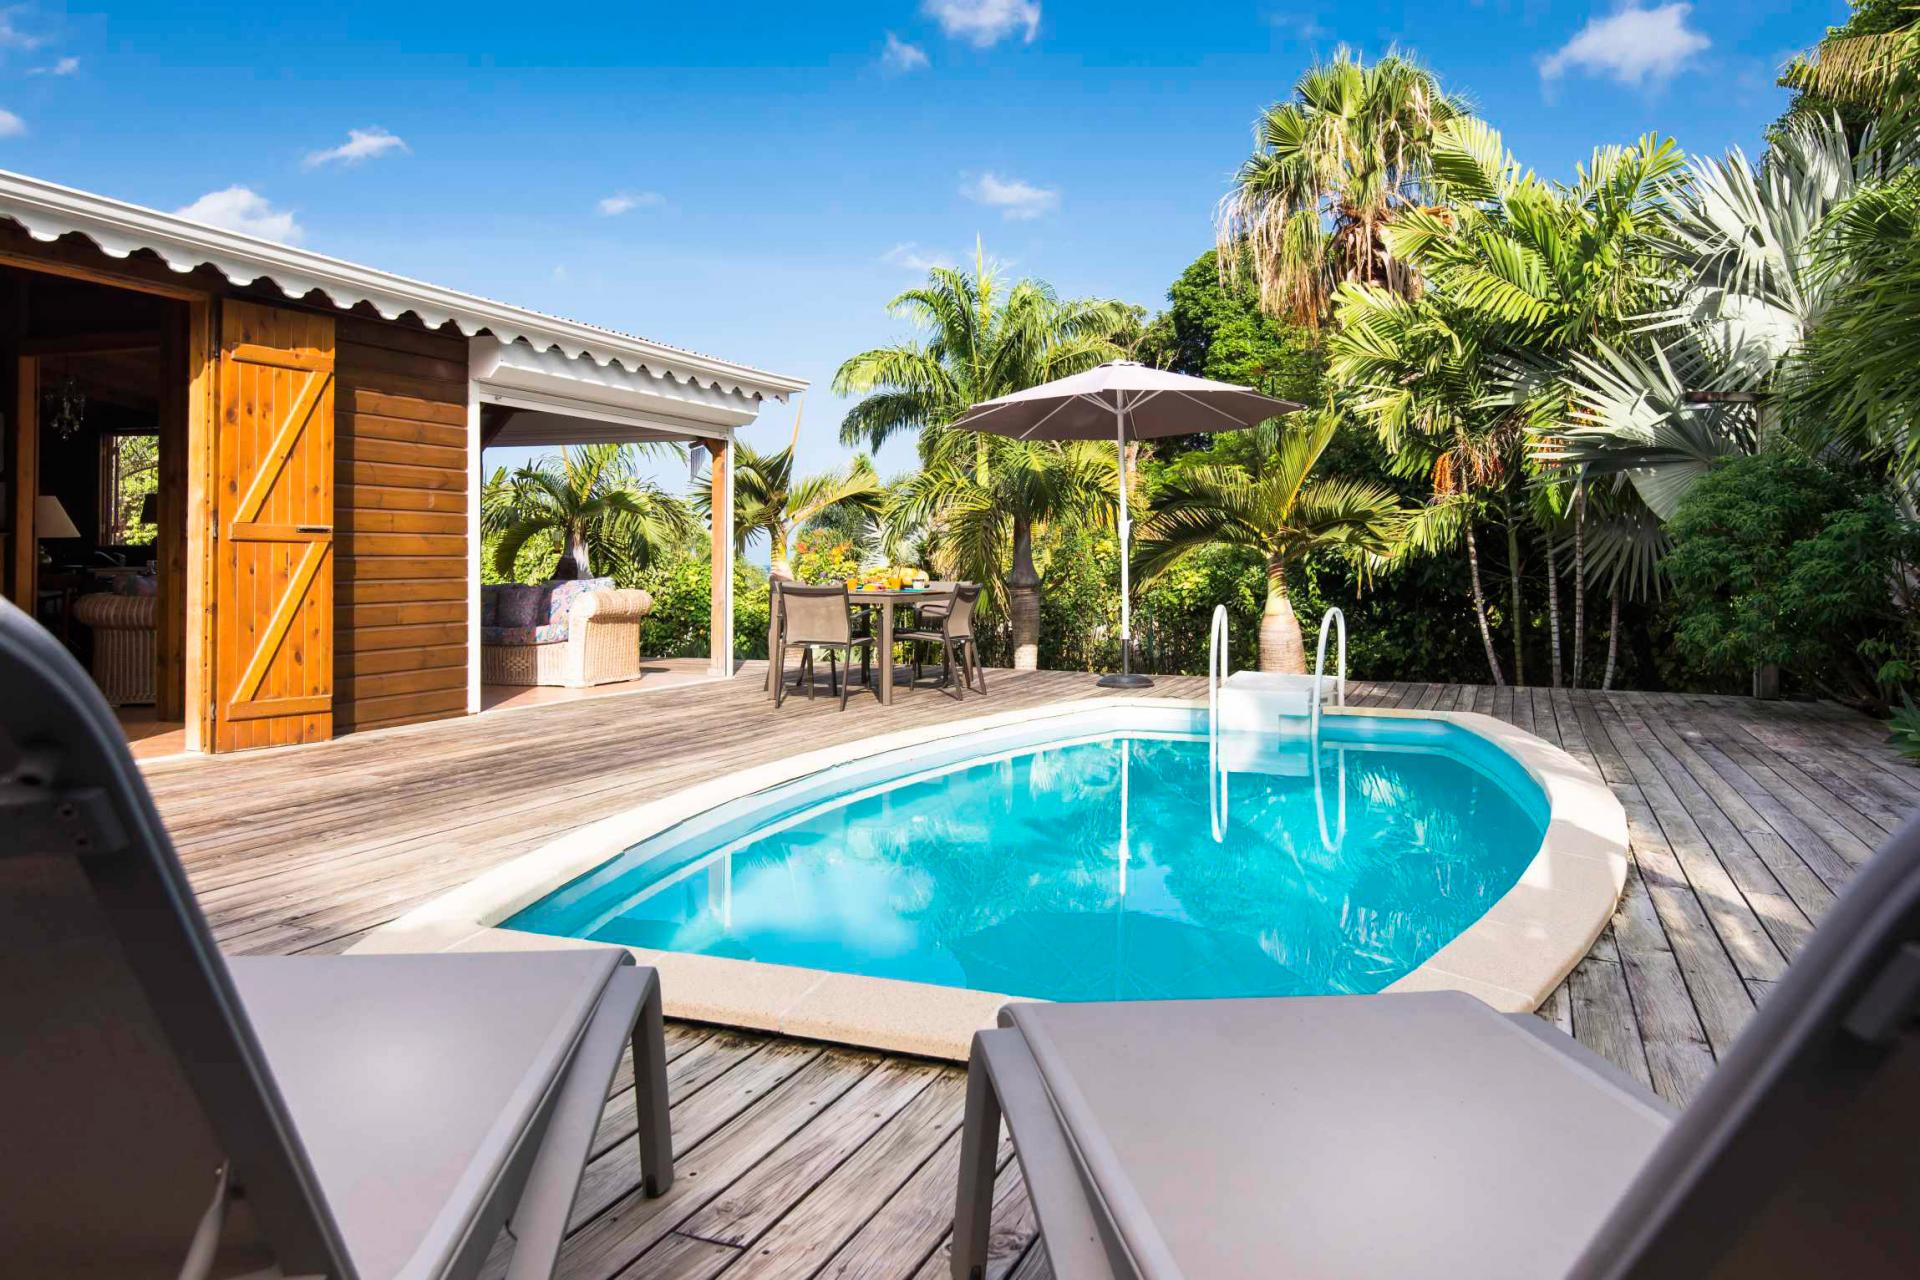 Location villa Bouillante Guadeloupe - Transats et piscine